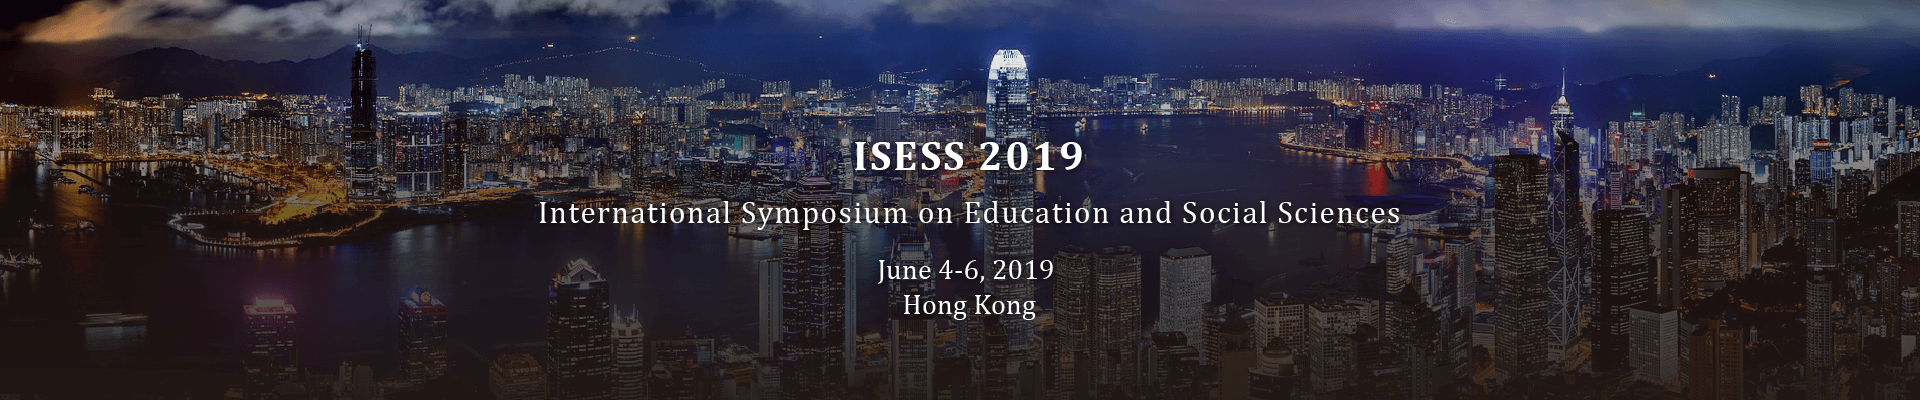 ISESS 2019  International Symposium on Education and Social Sciences, Hong Kong, China